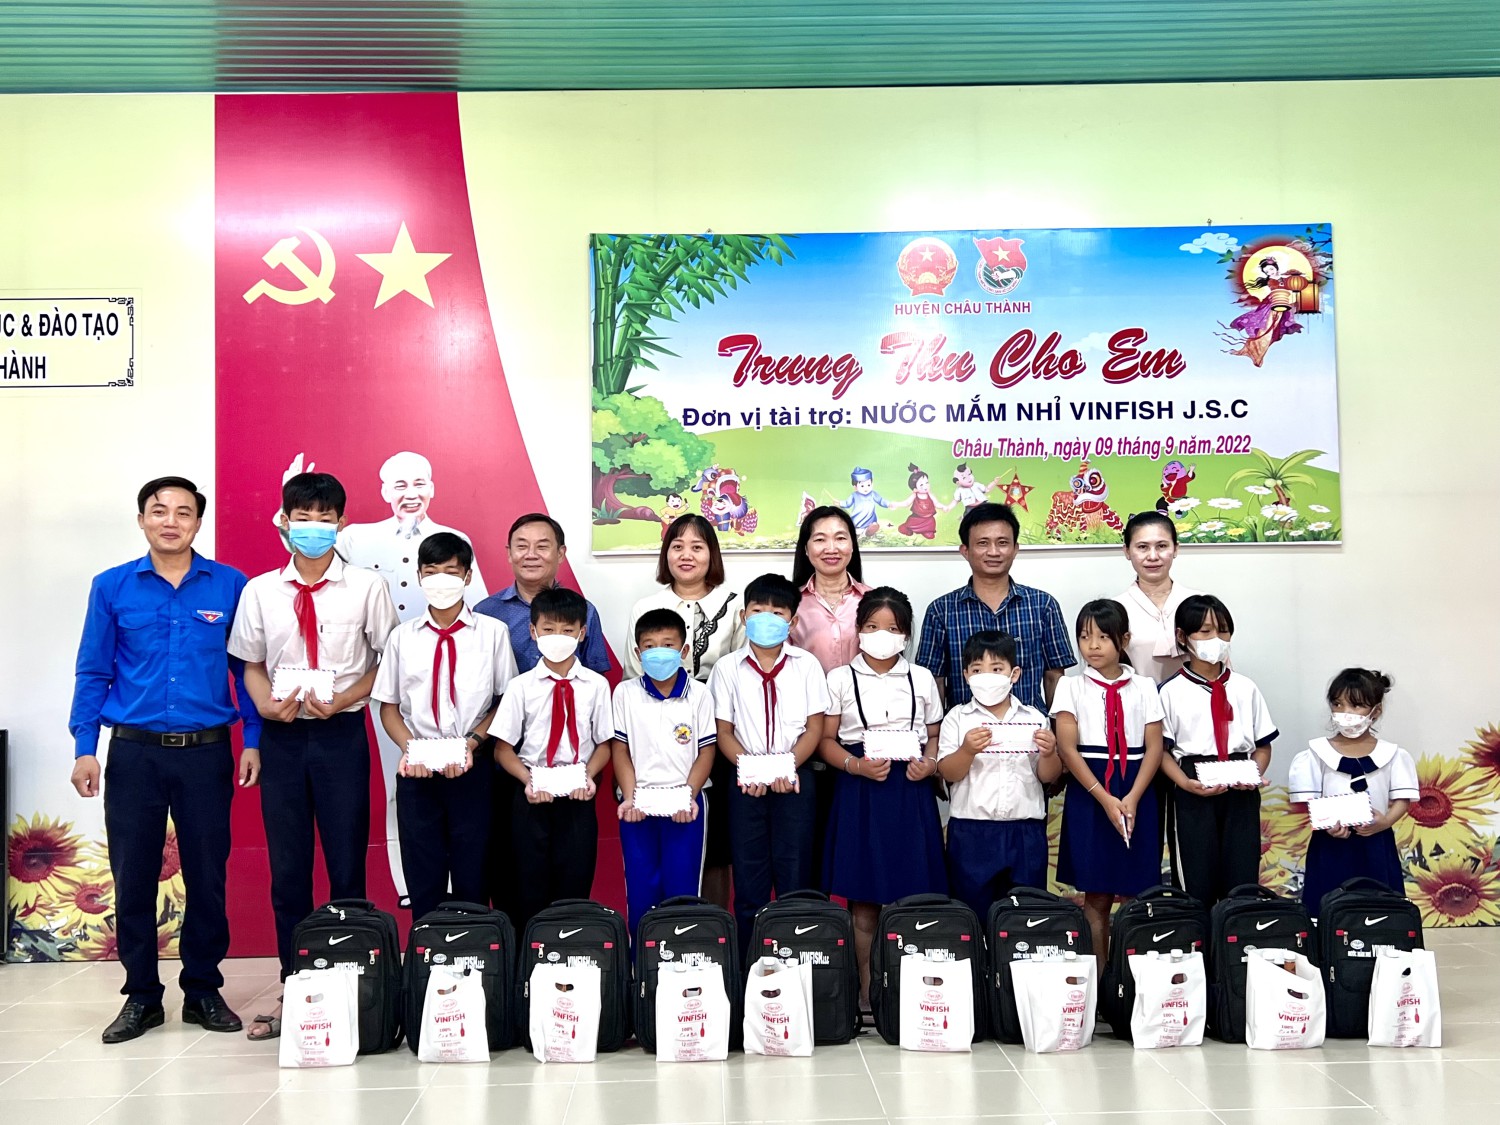 UBND huyện Châu Thành: Trao tặng 100 phần quà  trung thu cho trẻ em